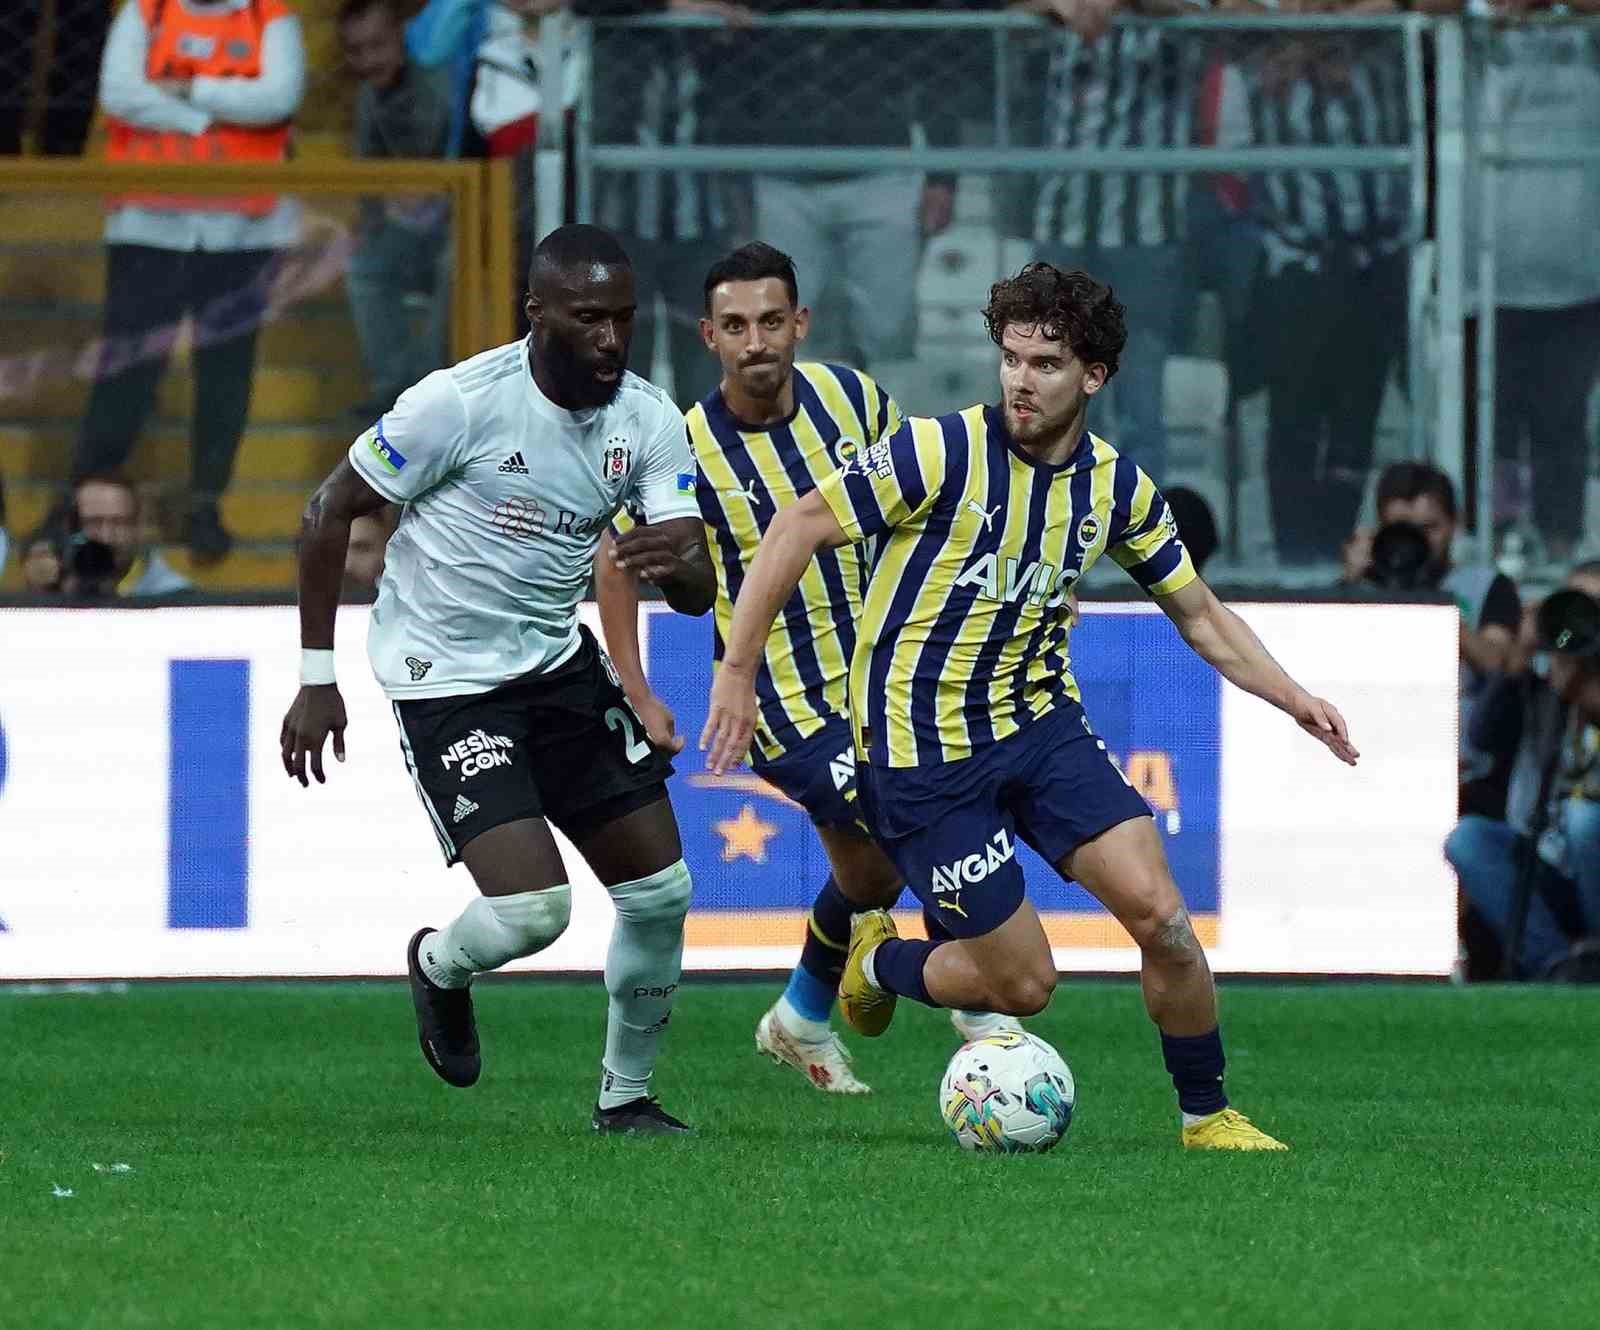 Fenerbahçe ile Beşiktaş 357. randevuda